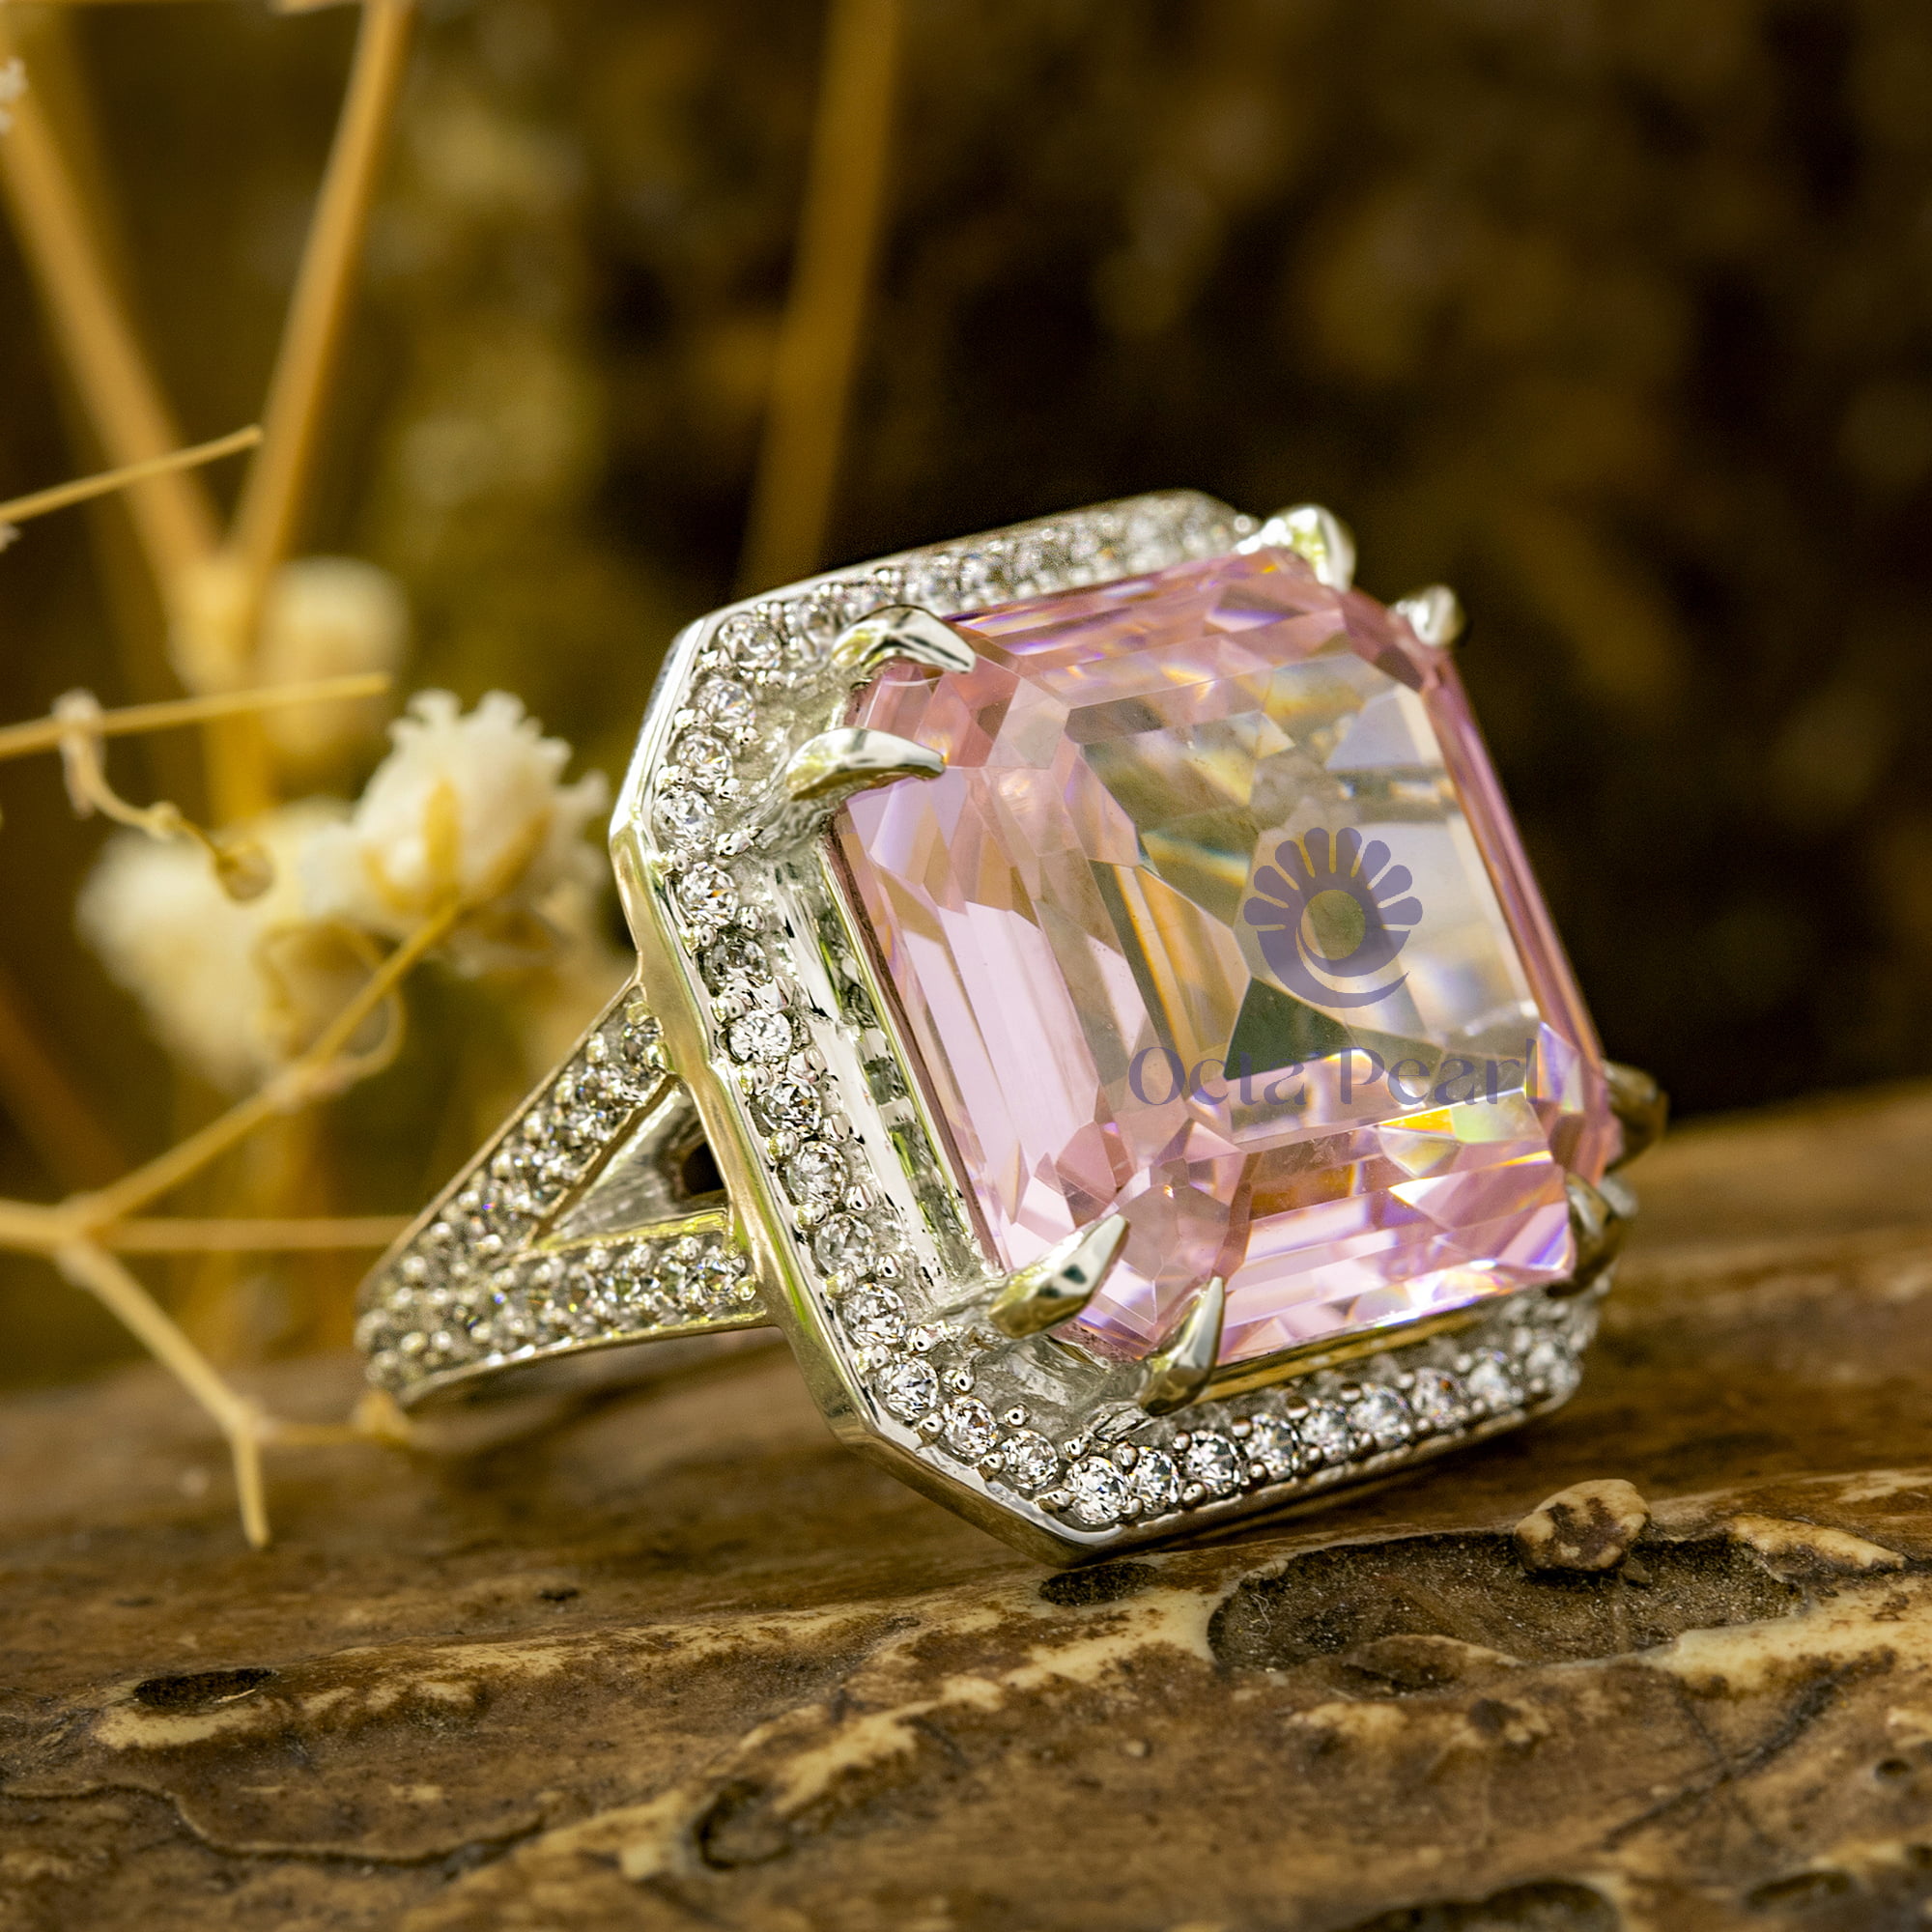 pink stone ring